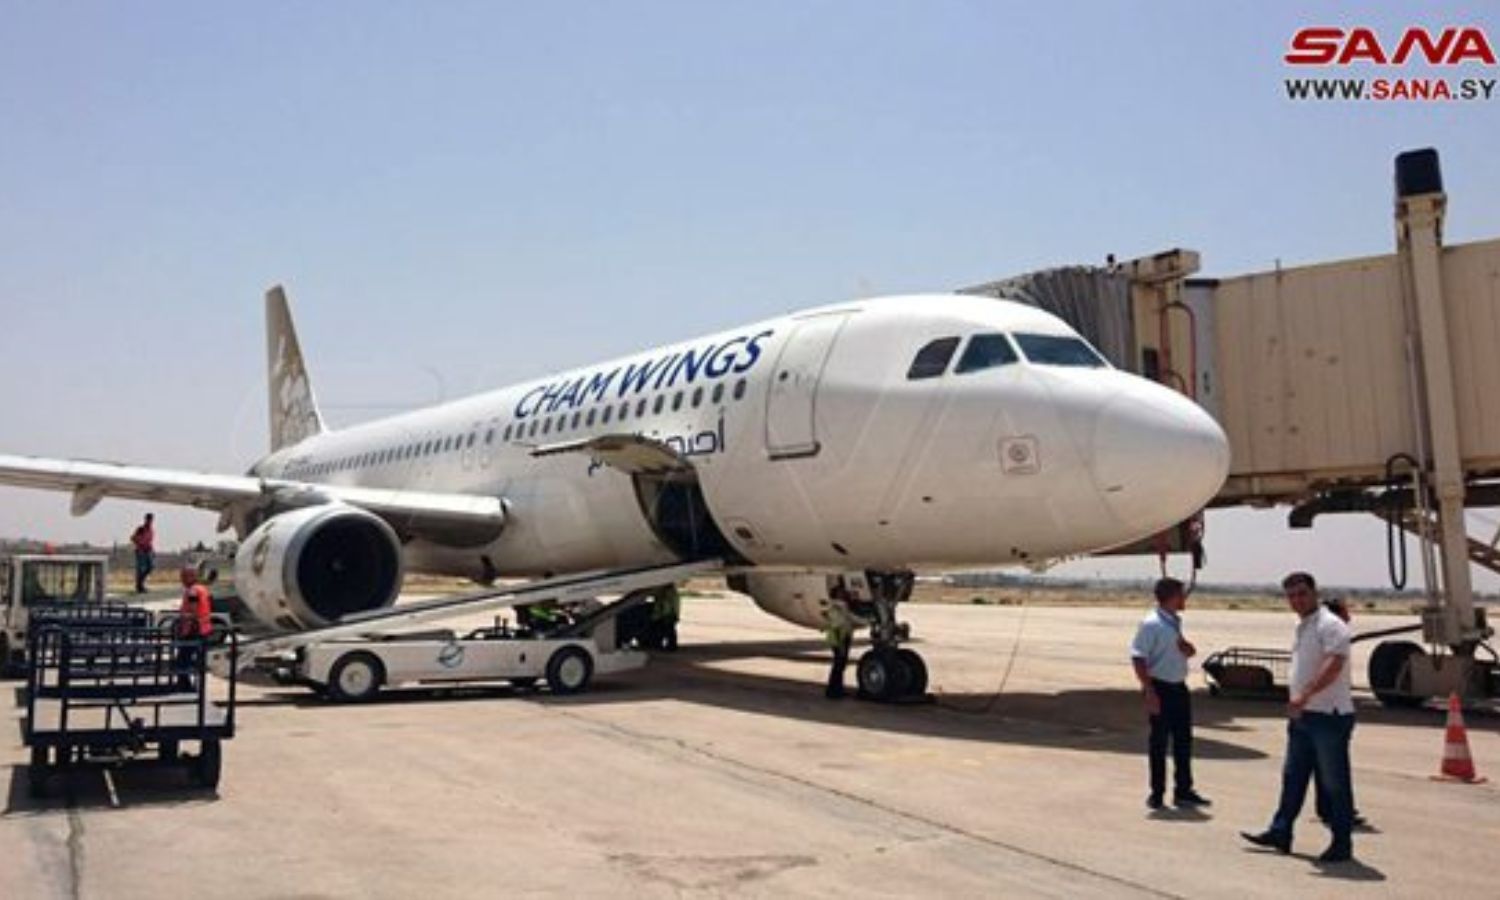 وصول أول طائرة من الكويت إلى مطار حلب في سوريا - 3 من حزيران 2022 (سانا)